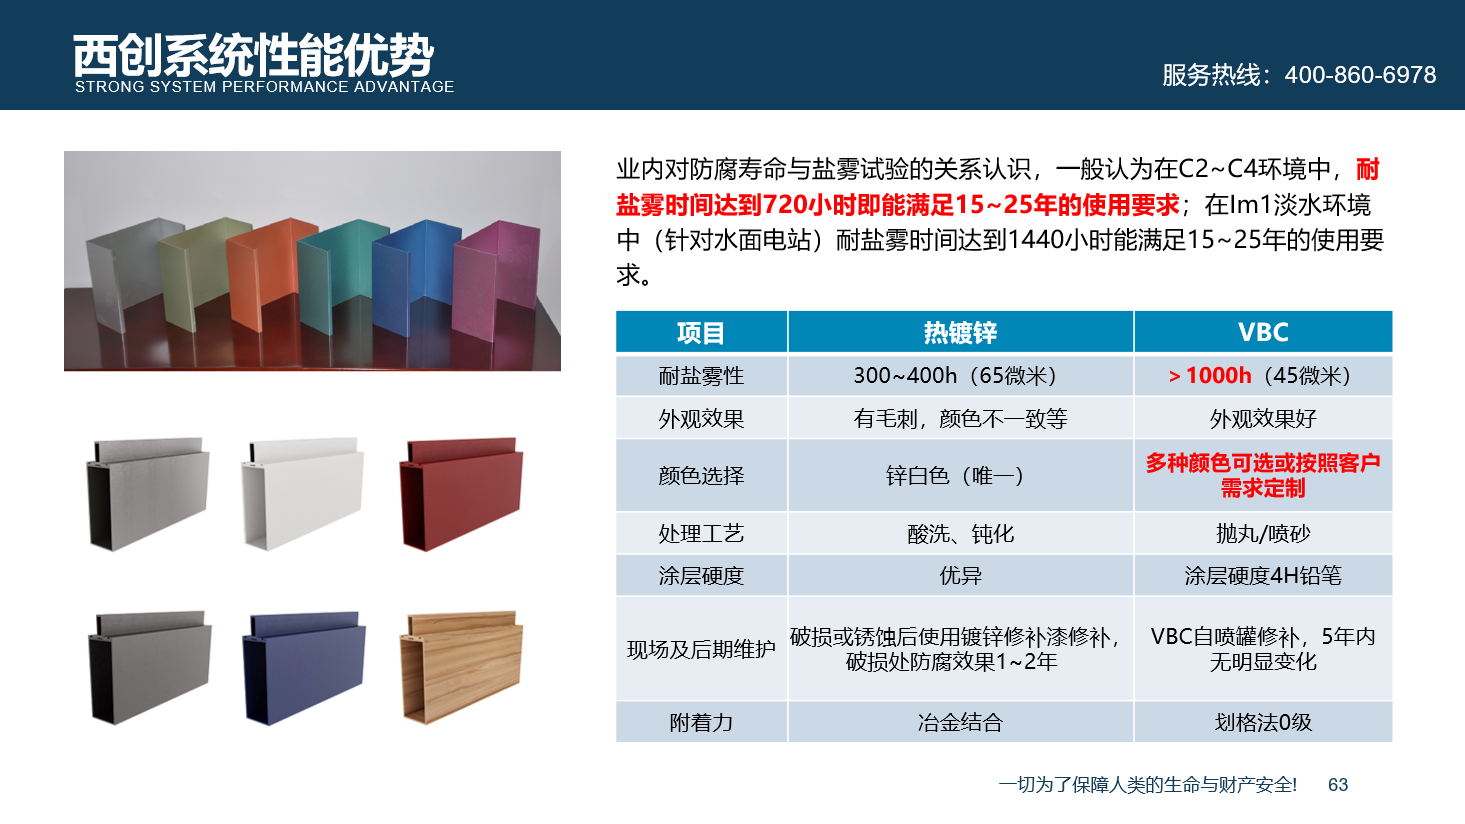 【超级防腐】西创系统精制钢防腐新材料超级防腐性能(图6)